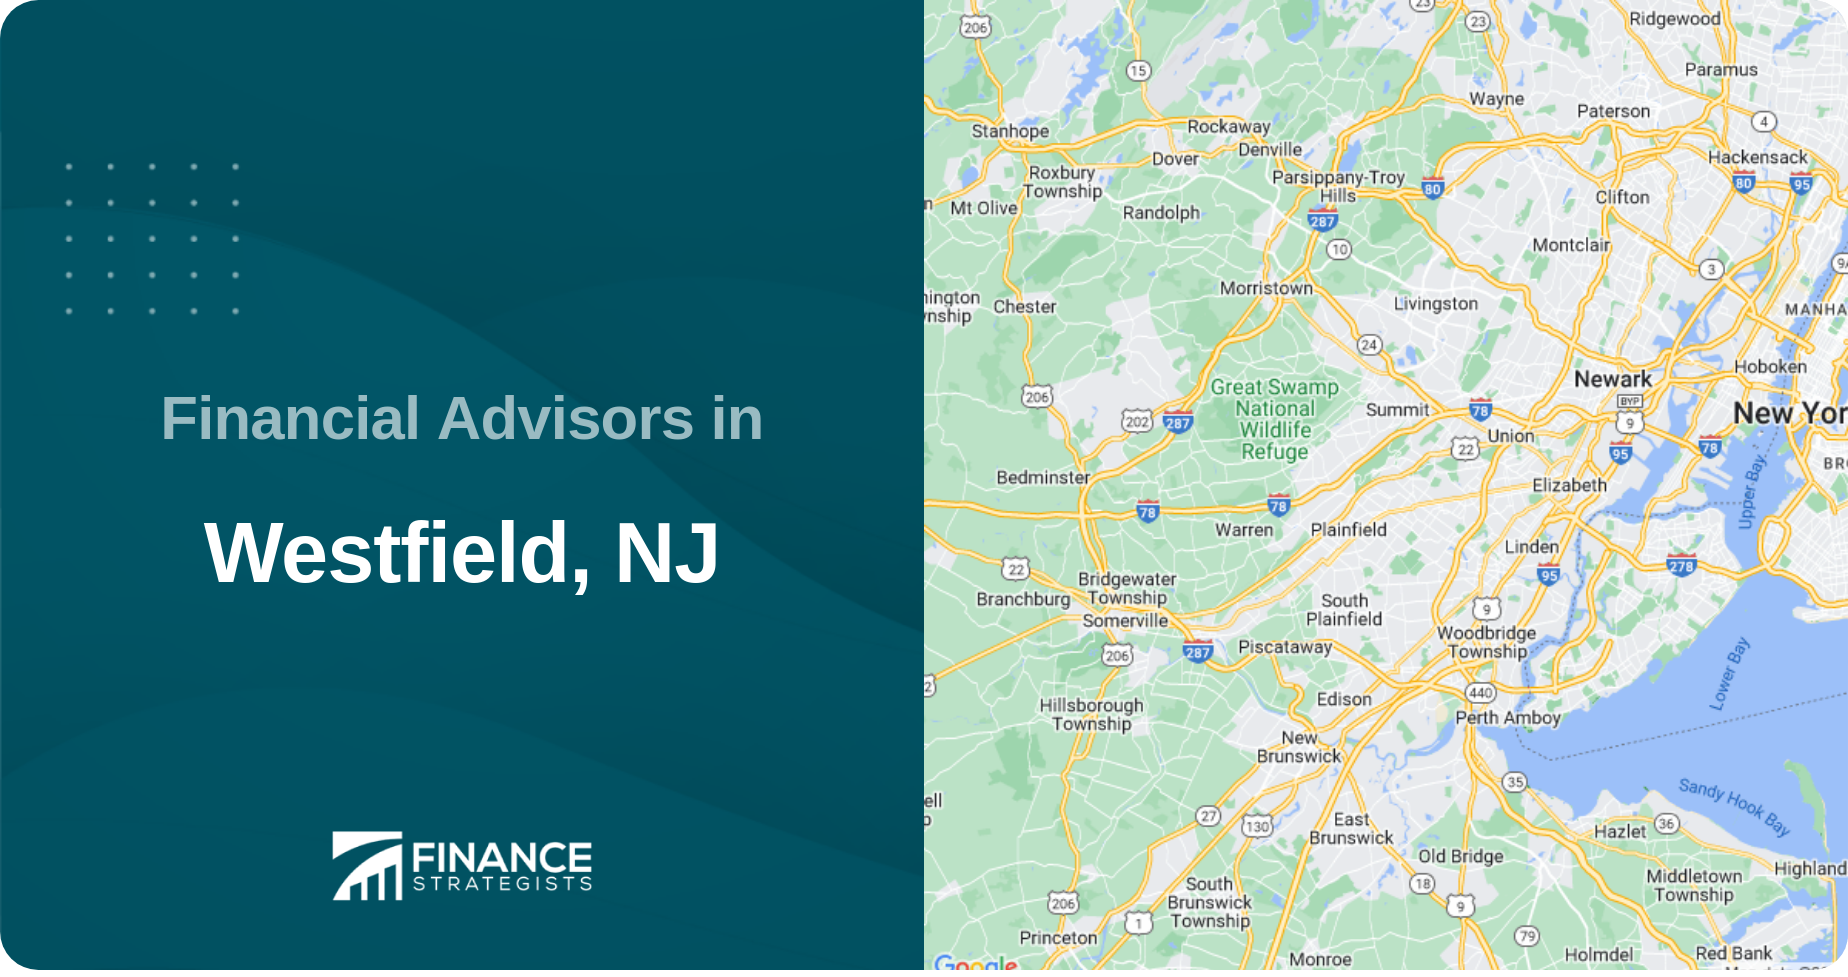 Financial Advisors in Westfield, NJ